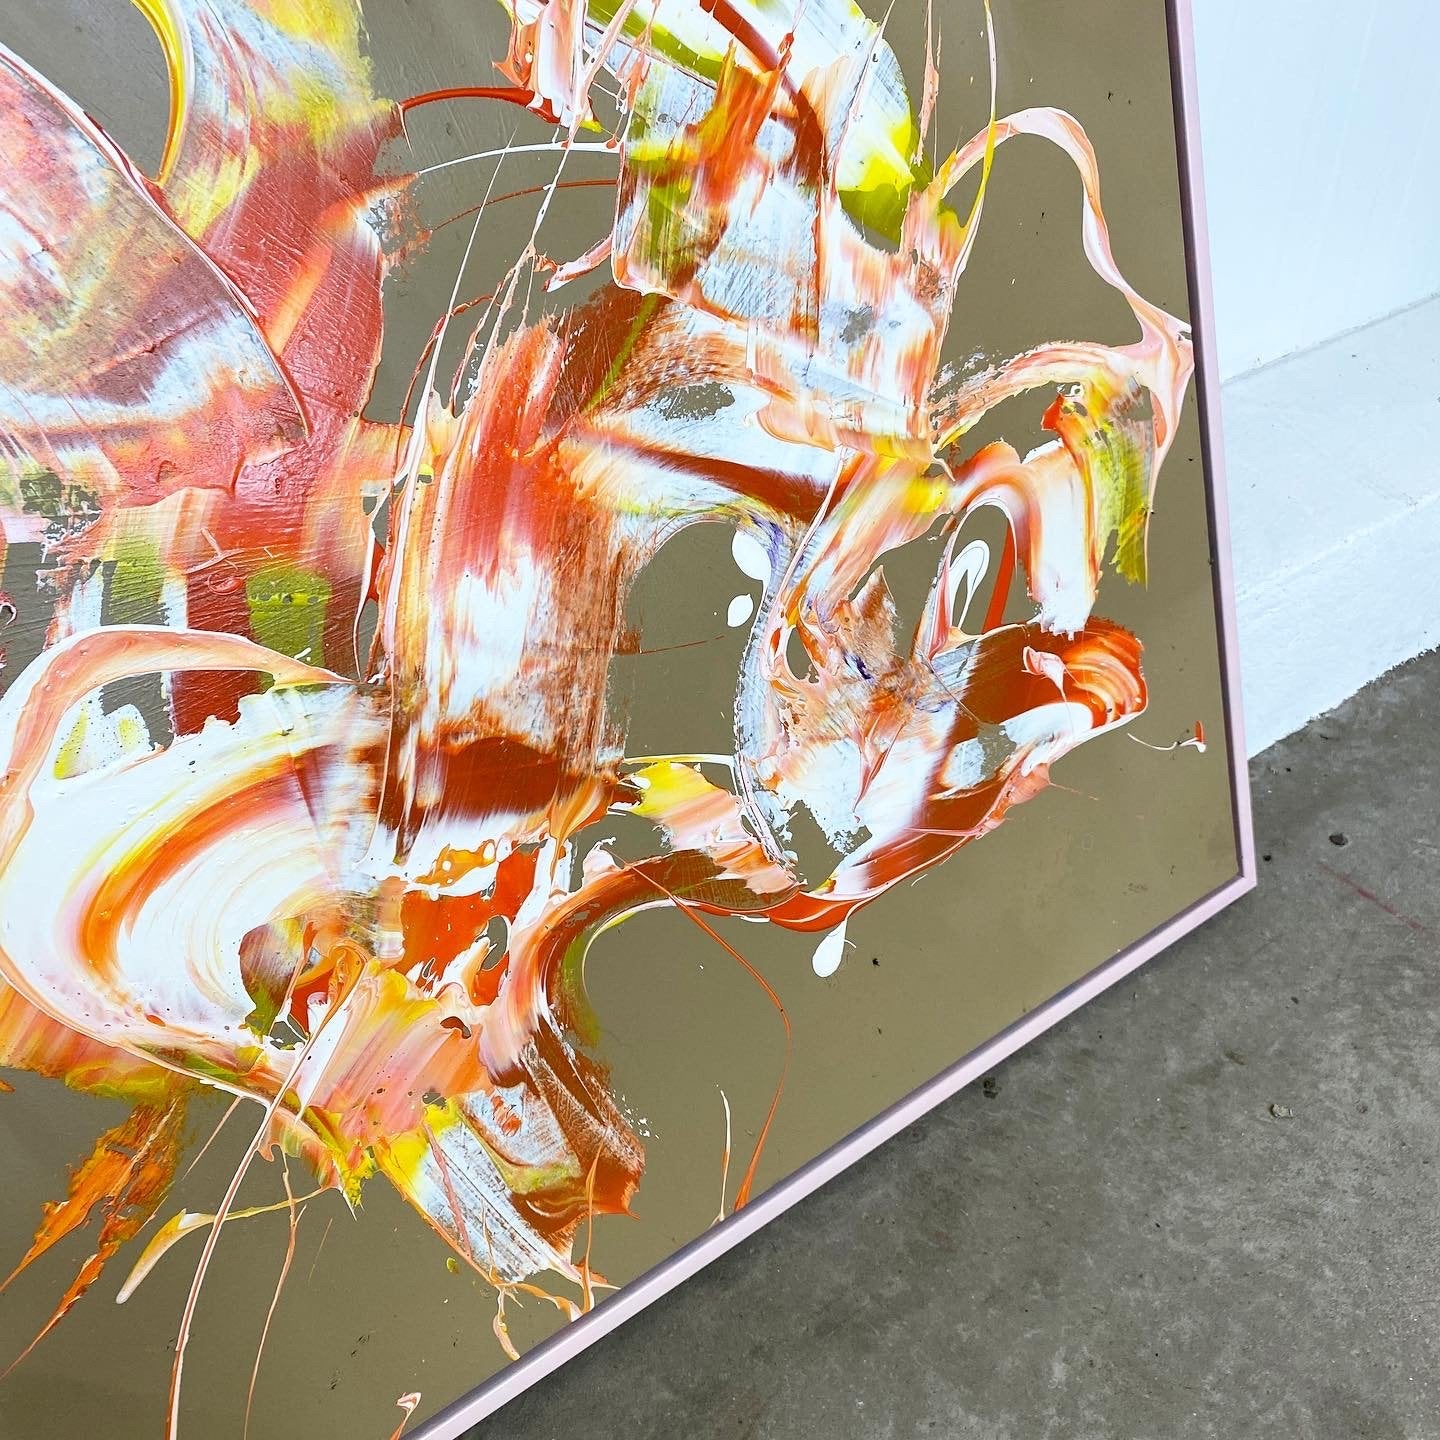 Maleri: "Less Is More #3" 100 x 100 cm